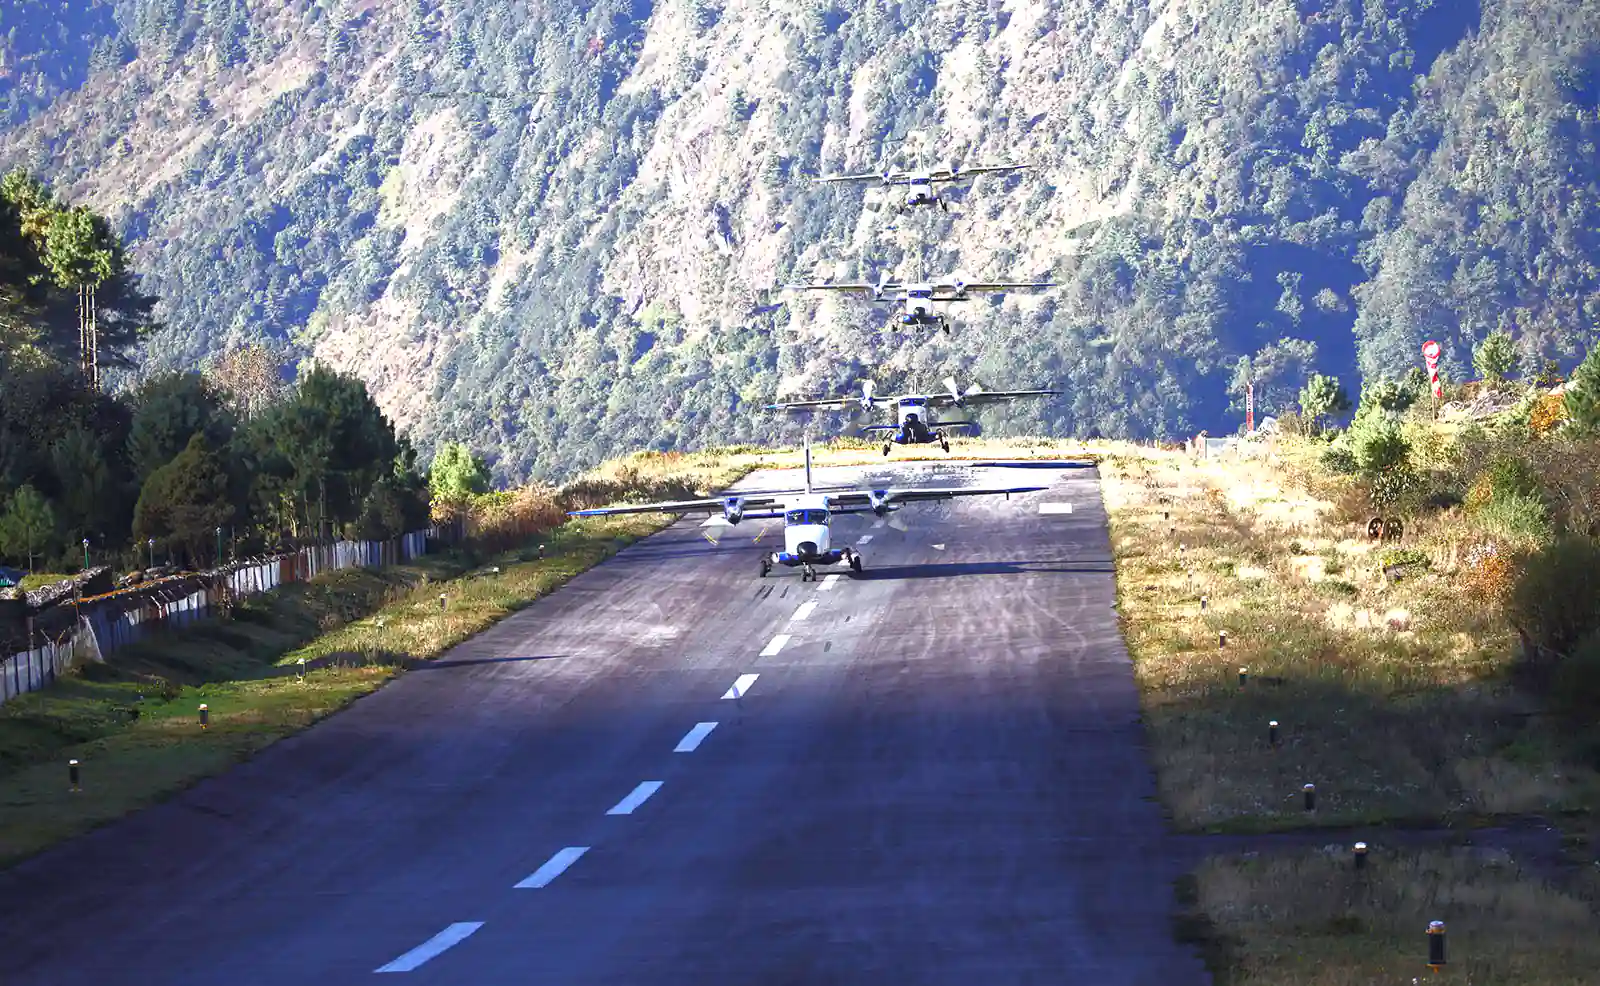 Landing at Lukla from Kathmandu